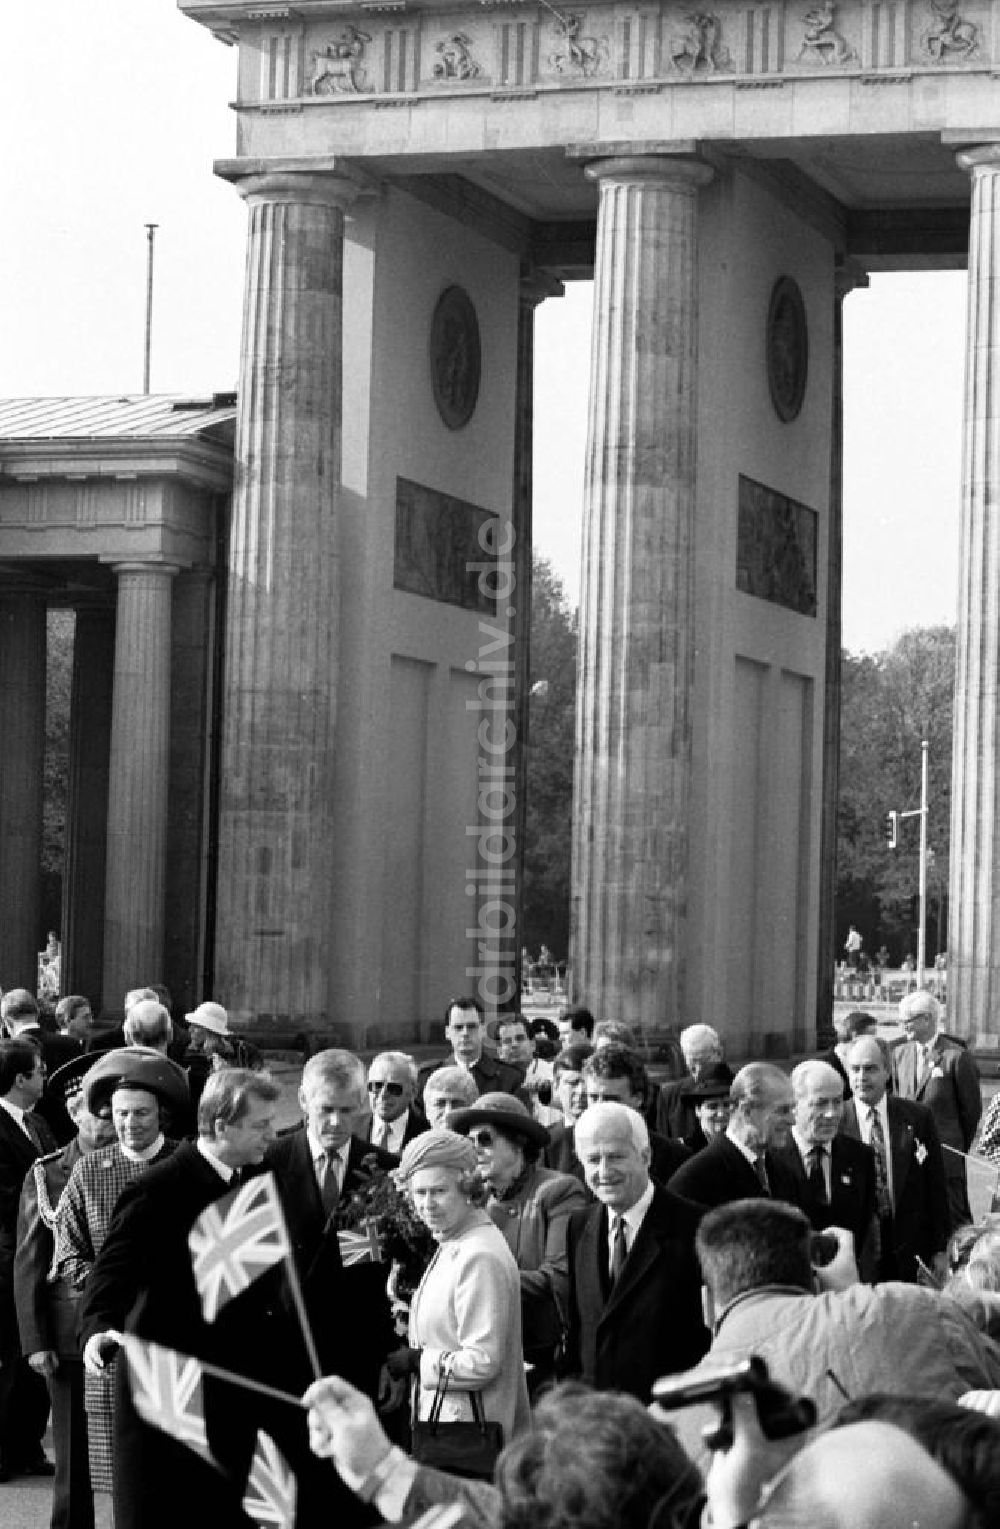 Berlin-Mitte: Besuch der Königin Elisabeth II. (Queen Elisabeth II.) des Vereinigten Königreich von Großbritannien und Nordirland in Berlin